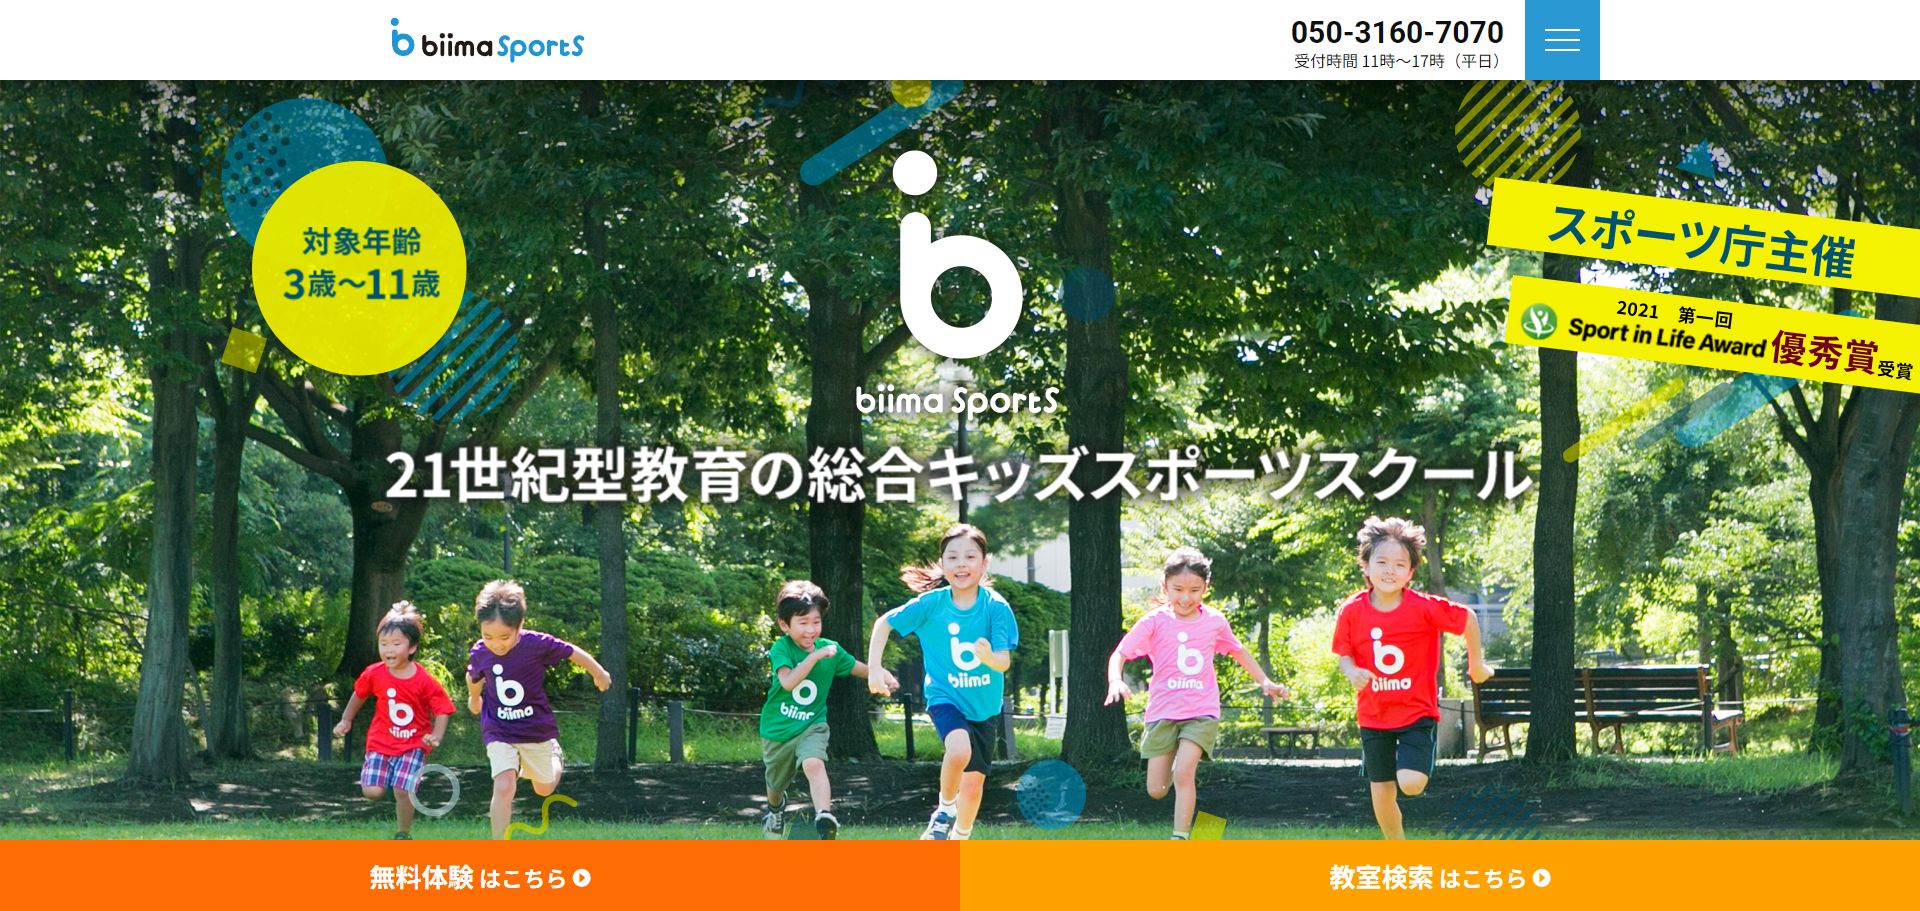 大田区で子どもにおすすめの習い事④biima sports